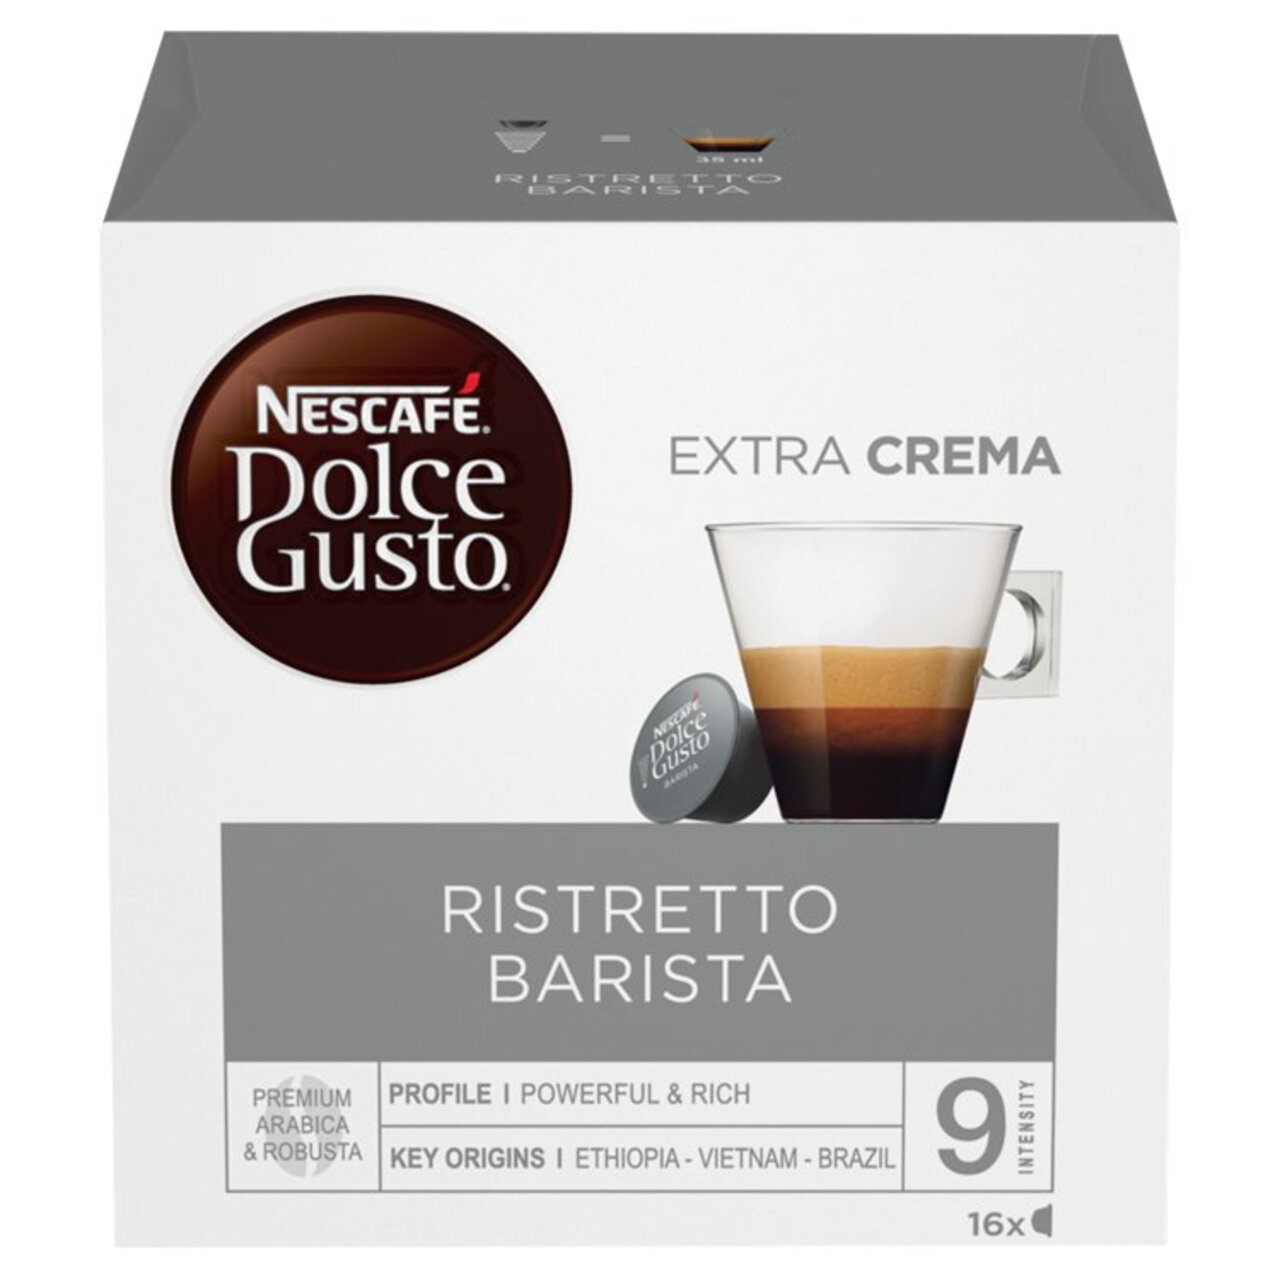 Nescafe Dolce Gusto Espresso Barista Pods 3 x 112g